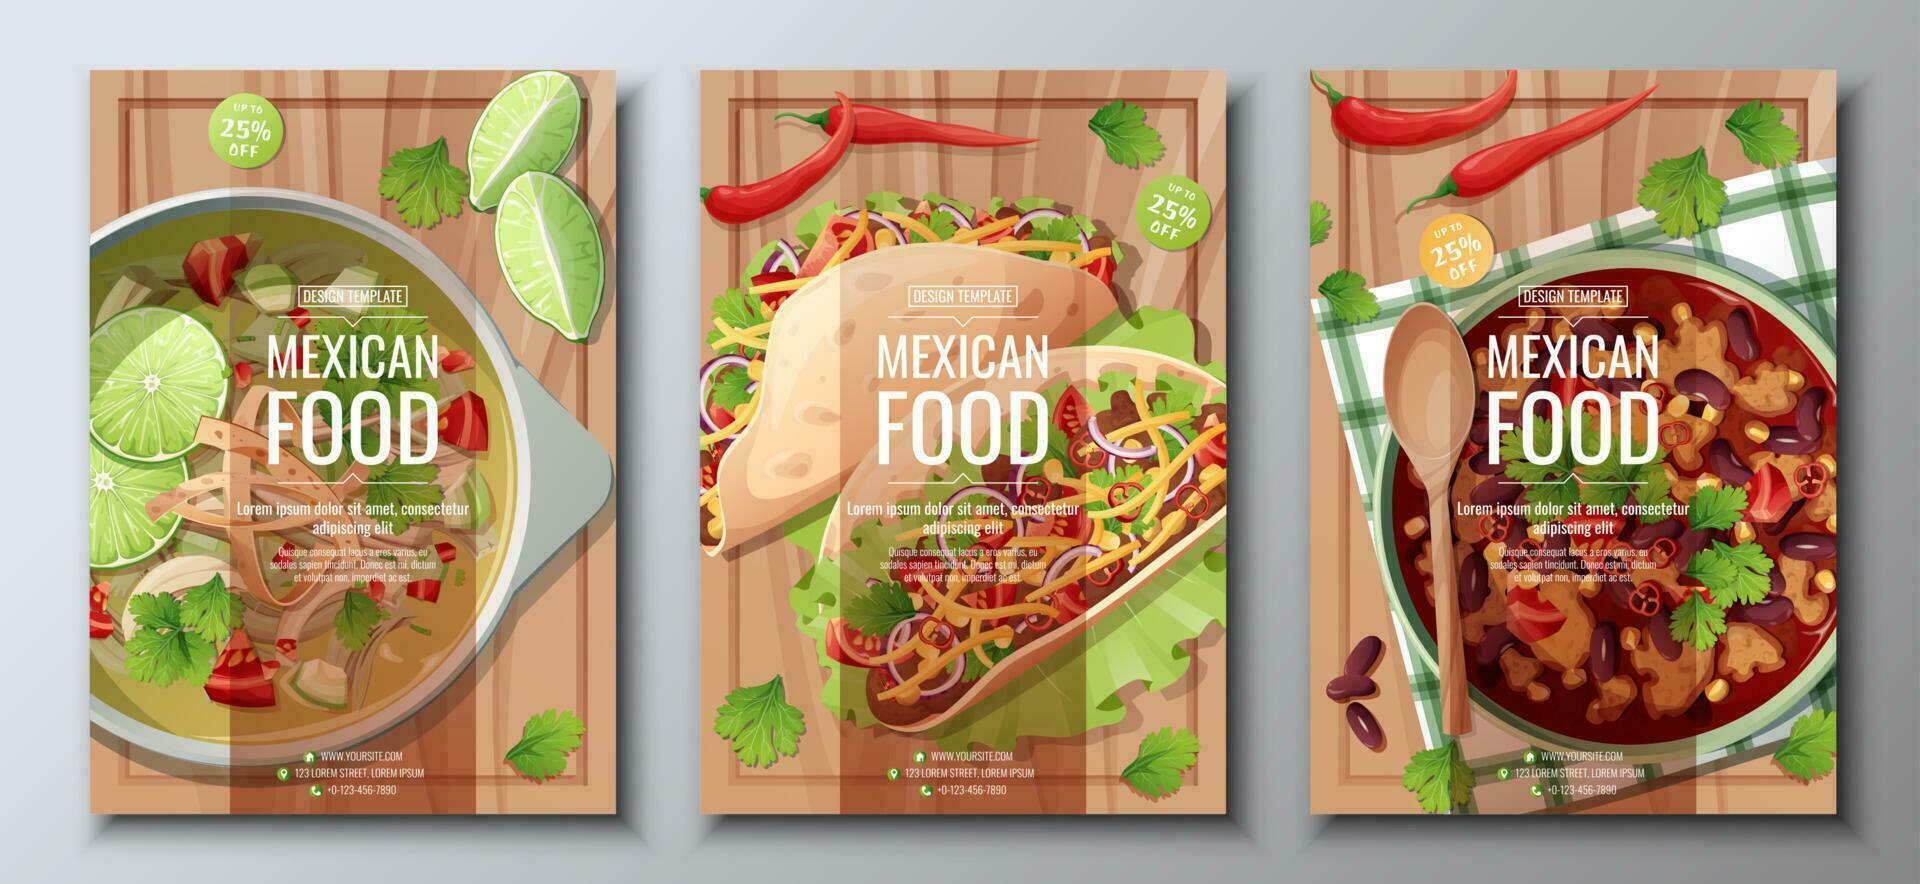 mexicano comida volantes conjunto en de madera antecedentes. tacos, Lima y frijol sopa. bandera, menú, póster, anuncio de tradicional mexicano comida vector